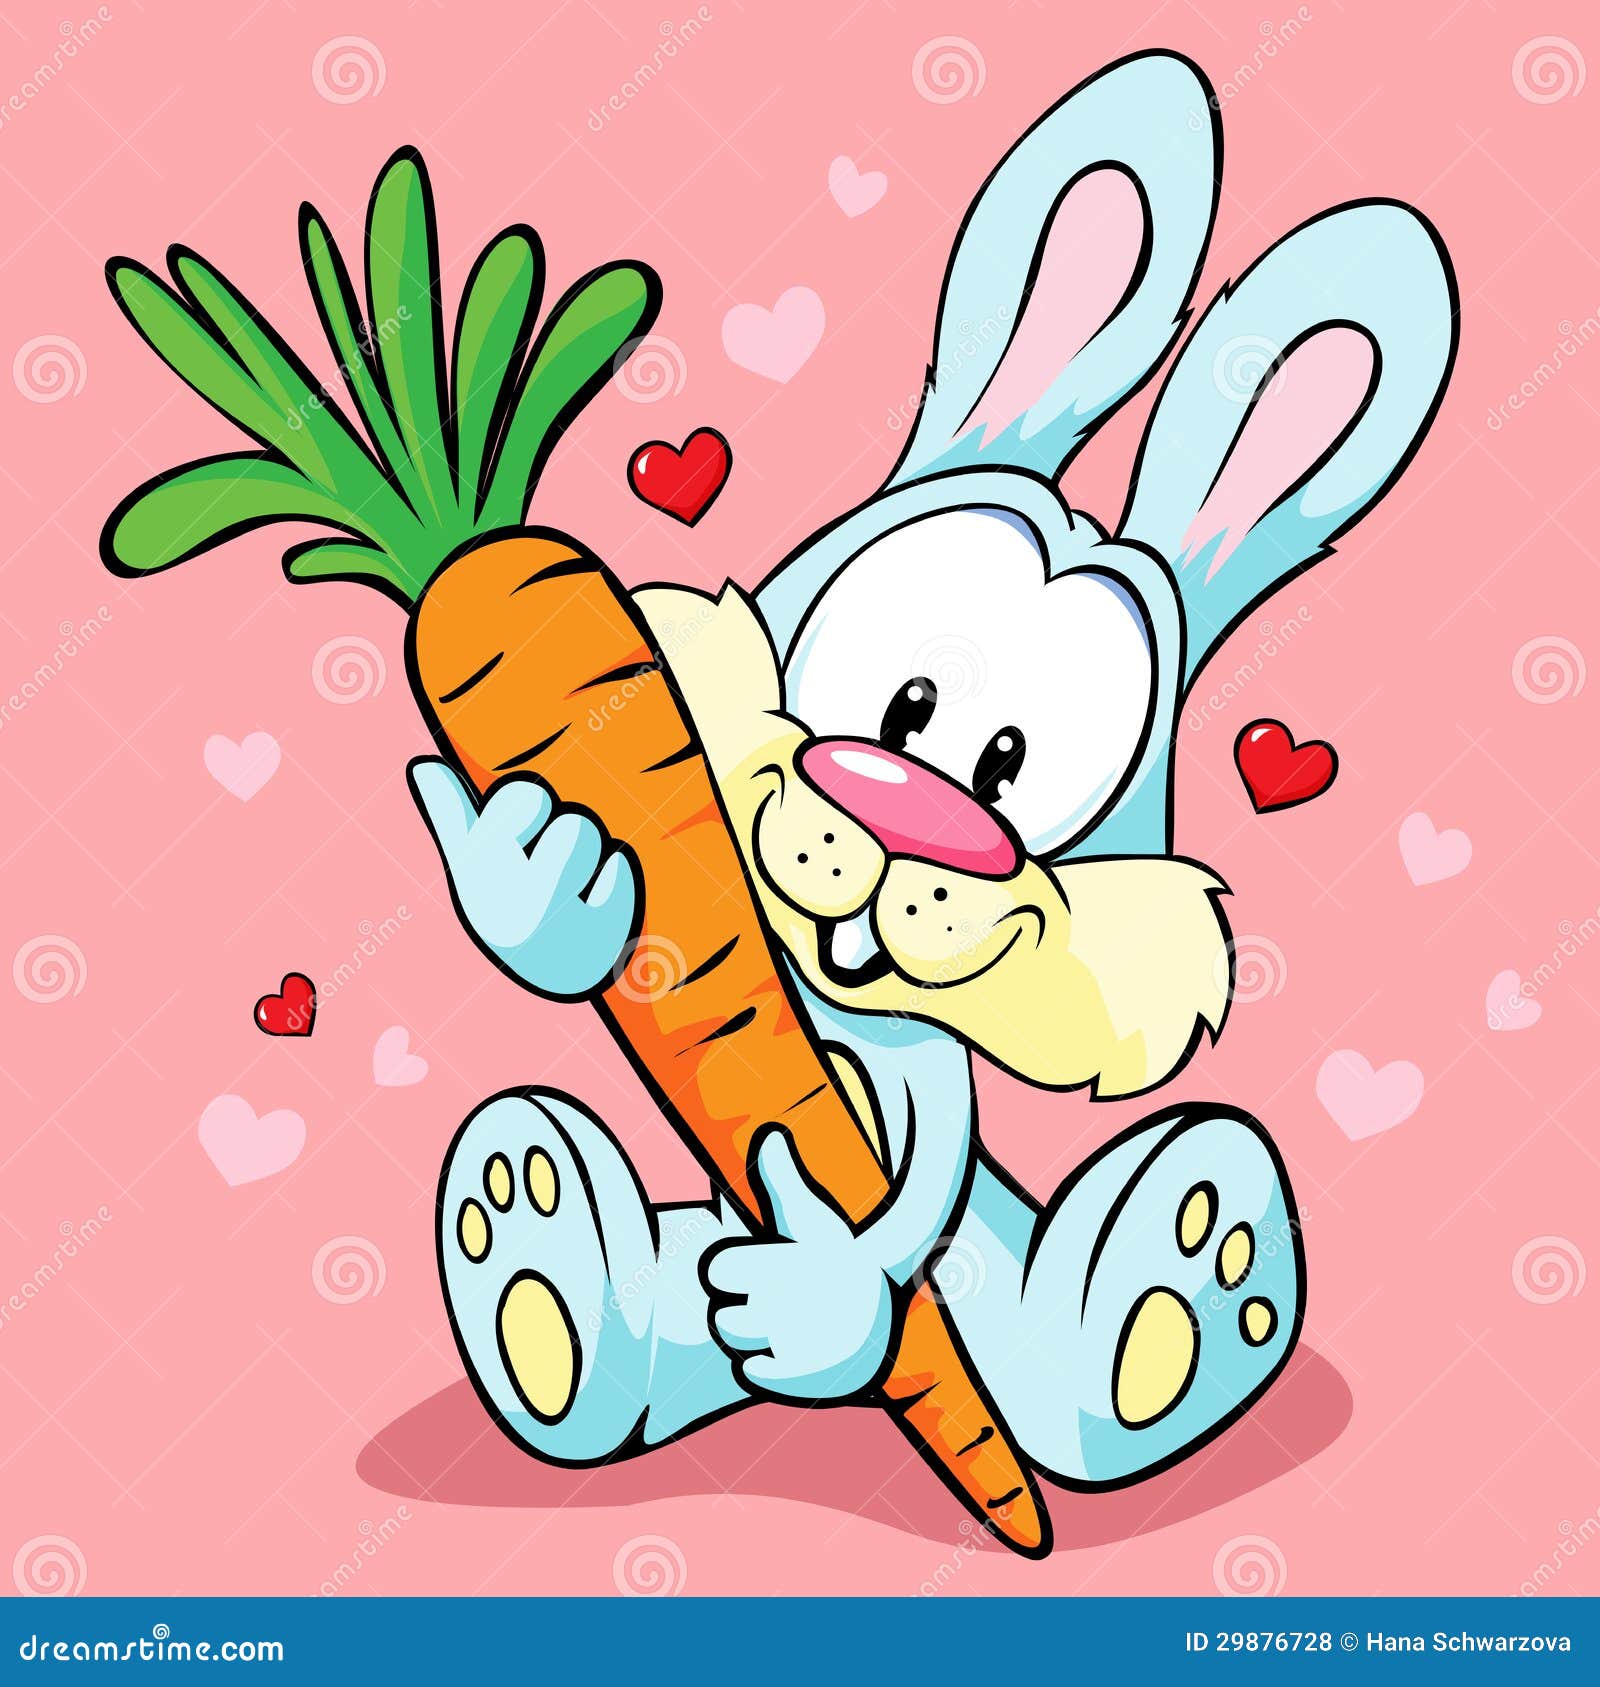 Включи зайку бобо. Заяц с морковкой. Заяц мультяшный. Зайка с морковкой. Pfzw DC vjhrjdrjq.